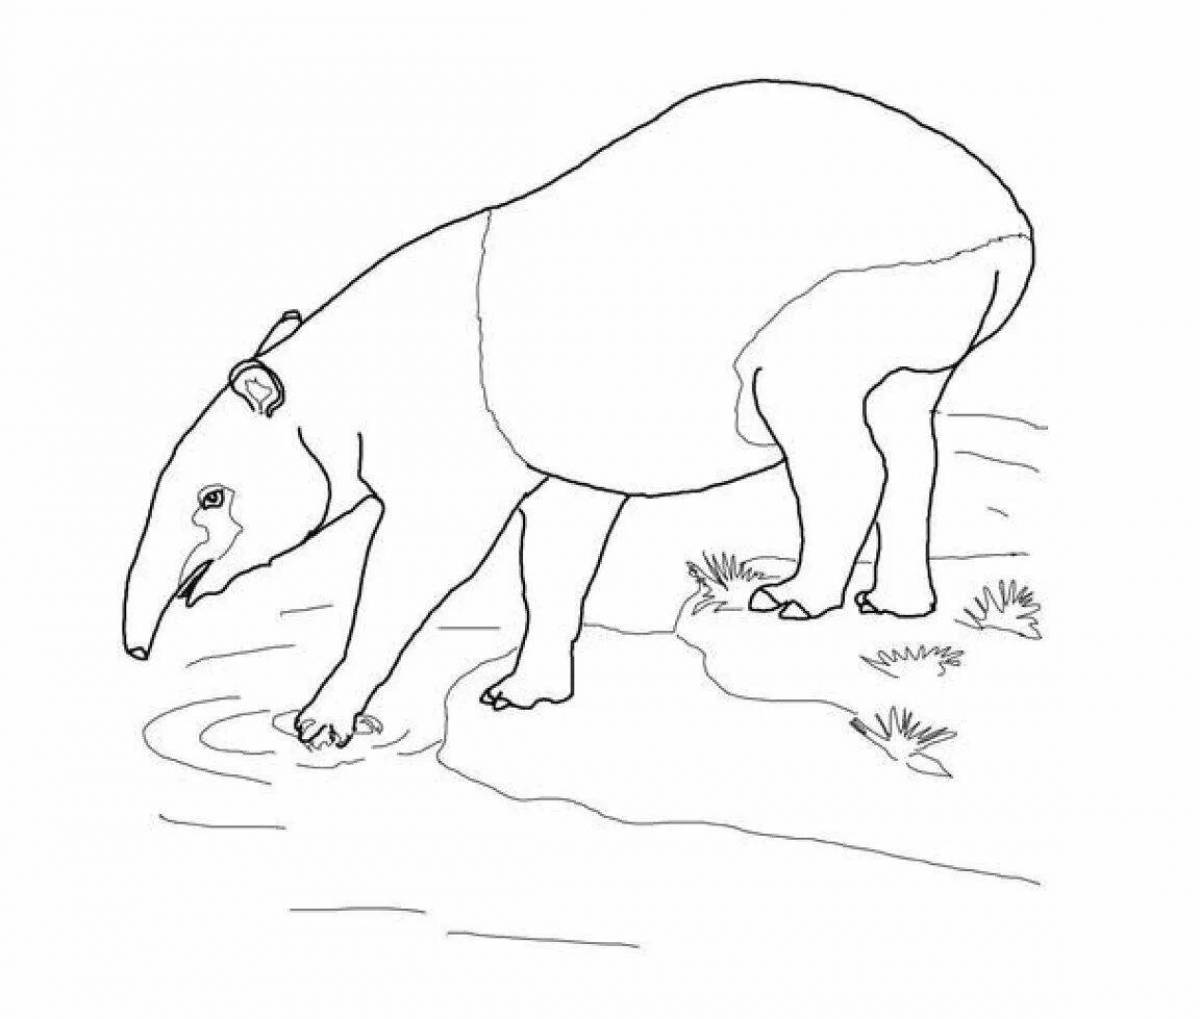 Coloring book beckoning tapir